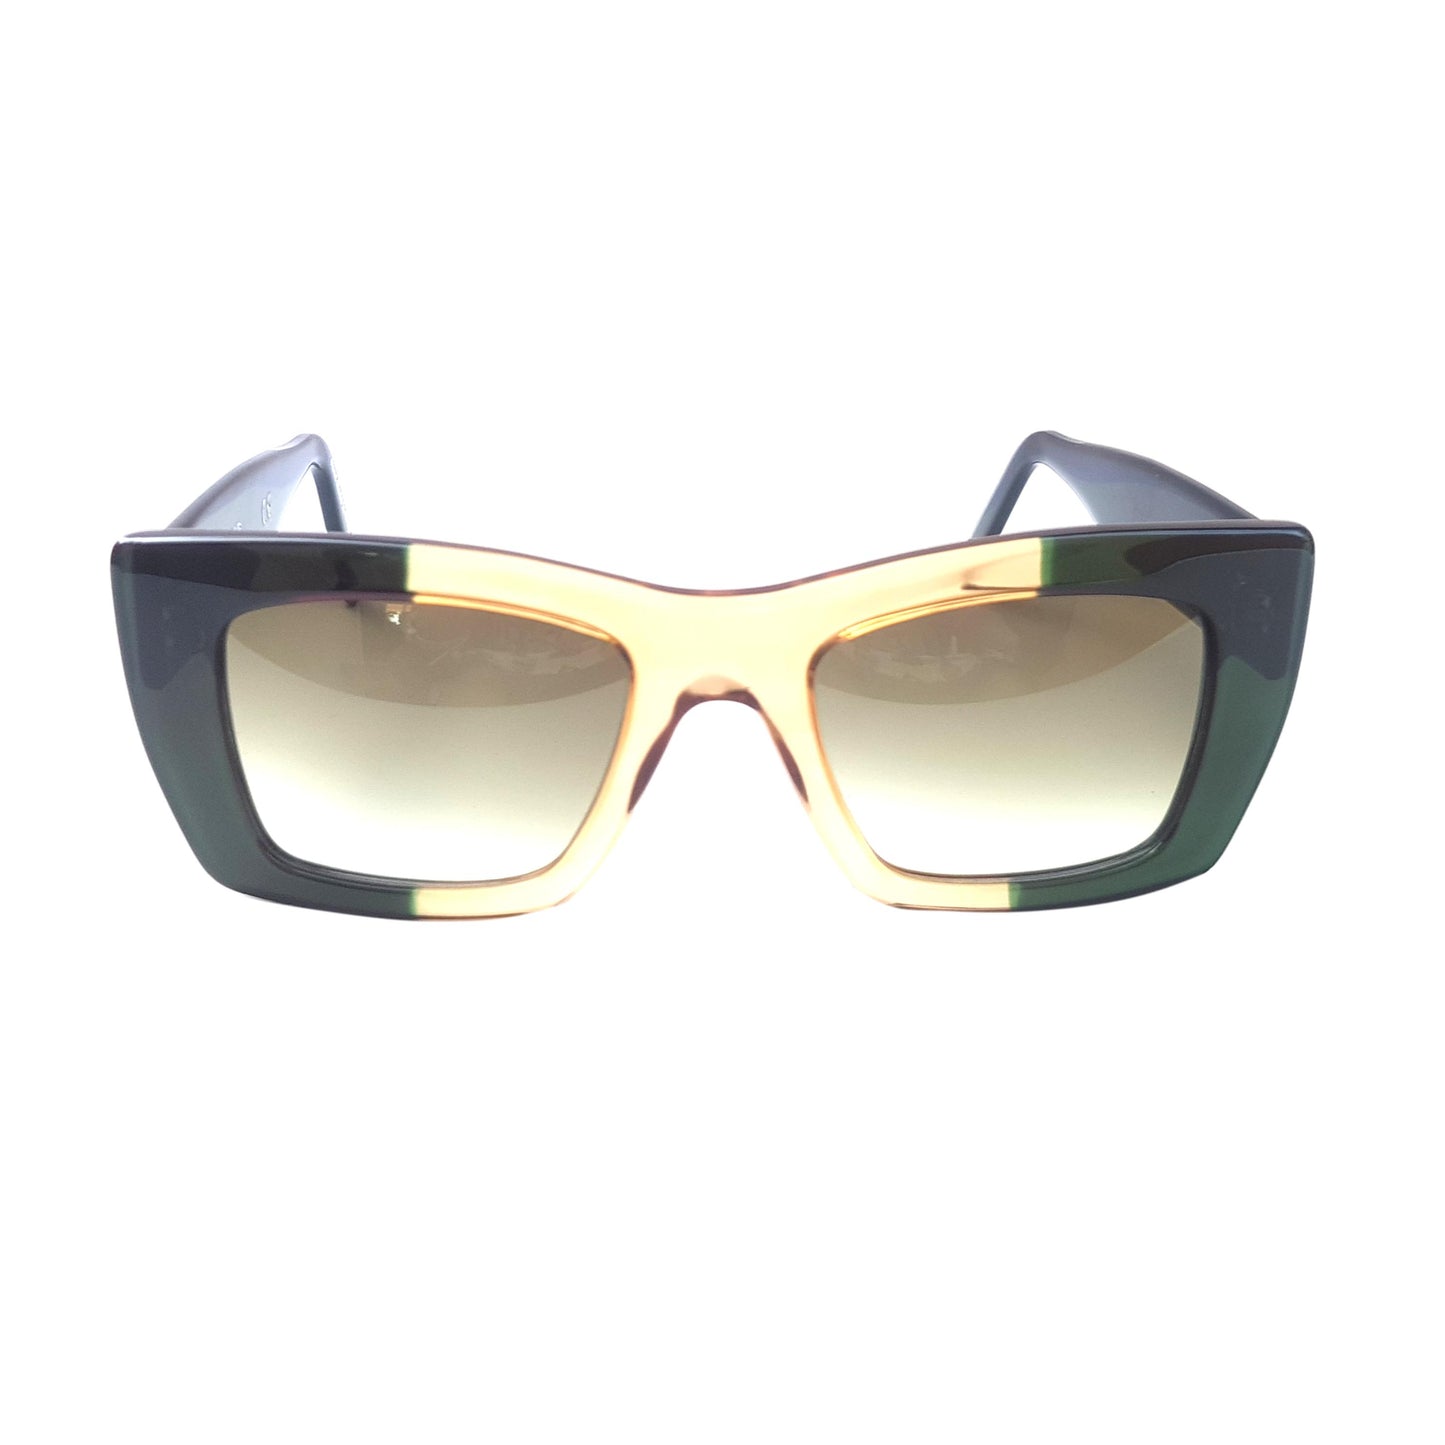 Gafas de sol rectangulares - G79 - Verde oscuro - Translúcido